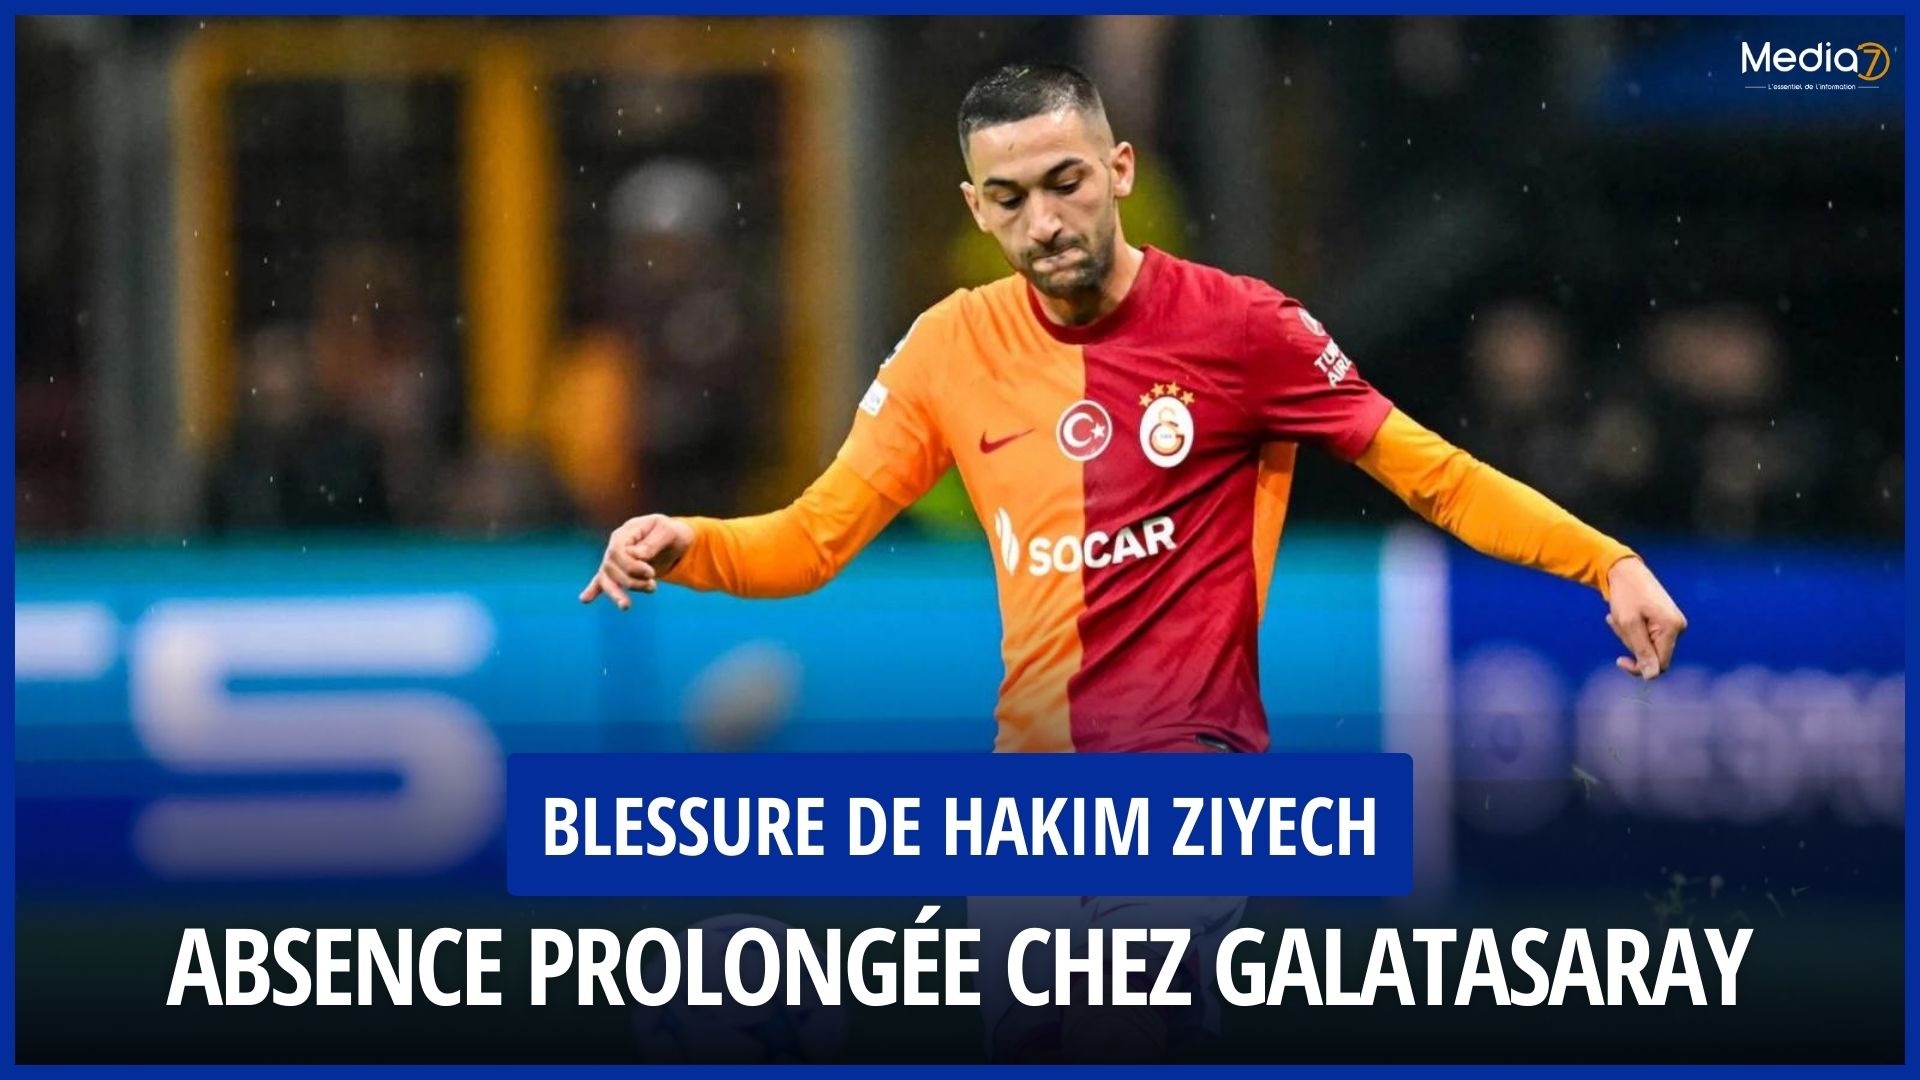 Hakim Ziyech injury: Prolonged absence from Galatasaray - Media7